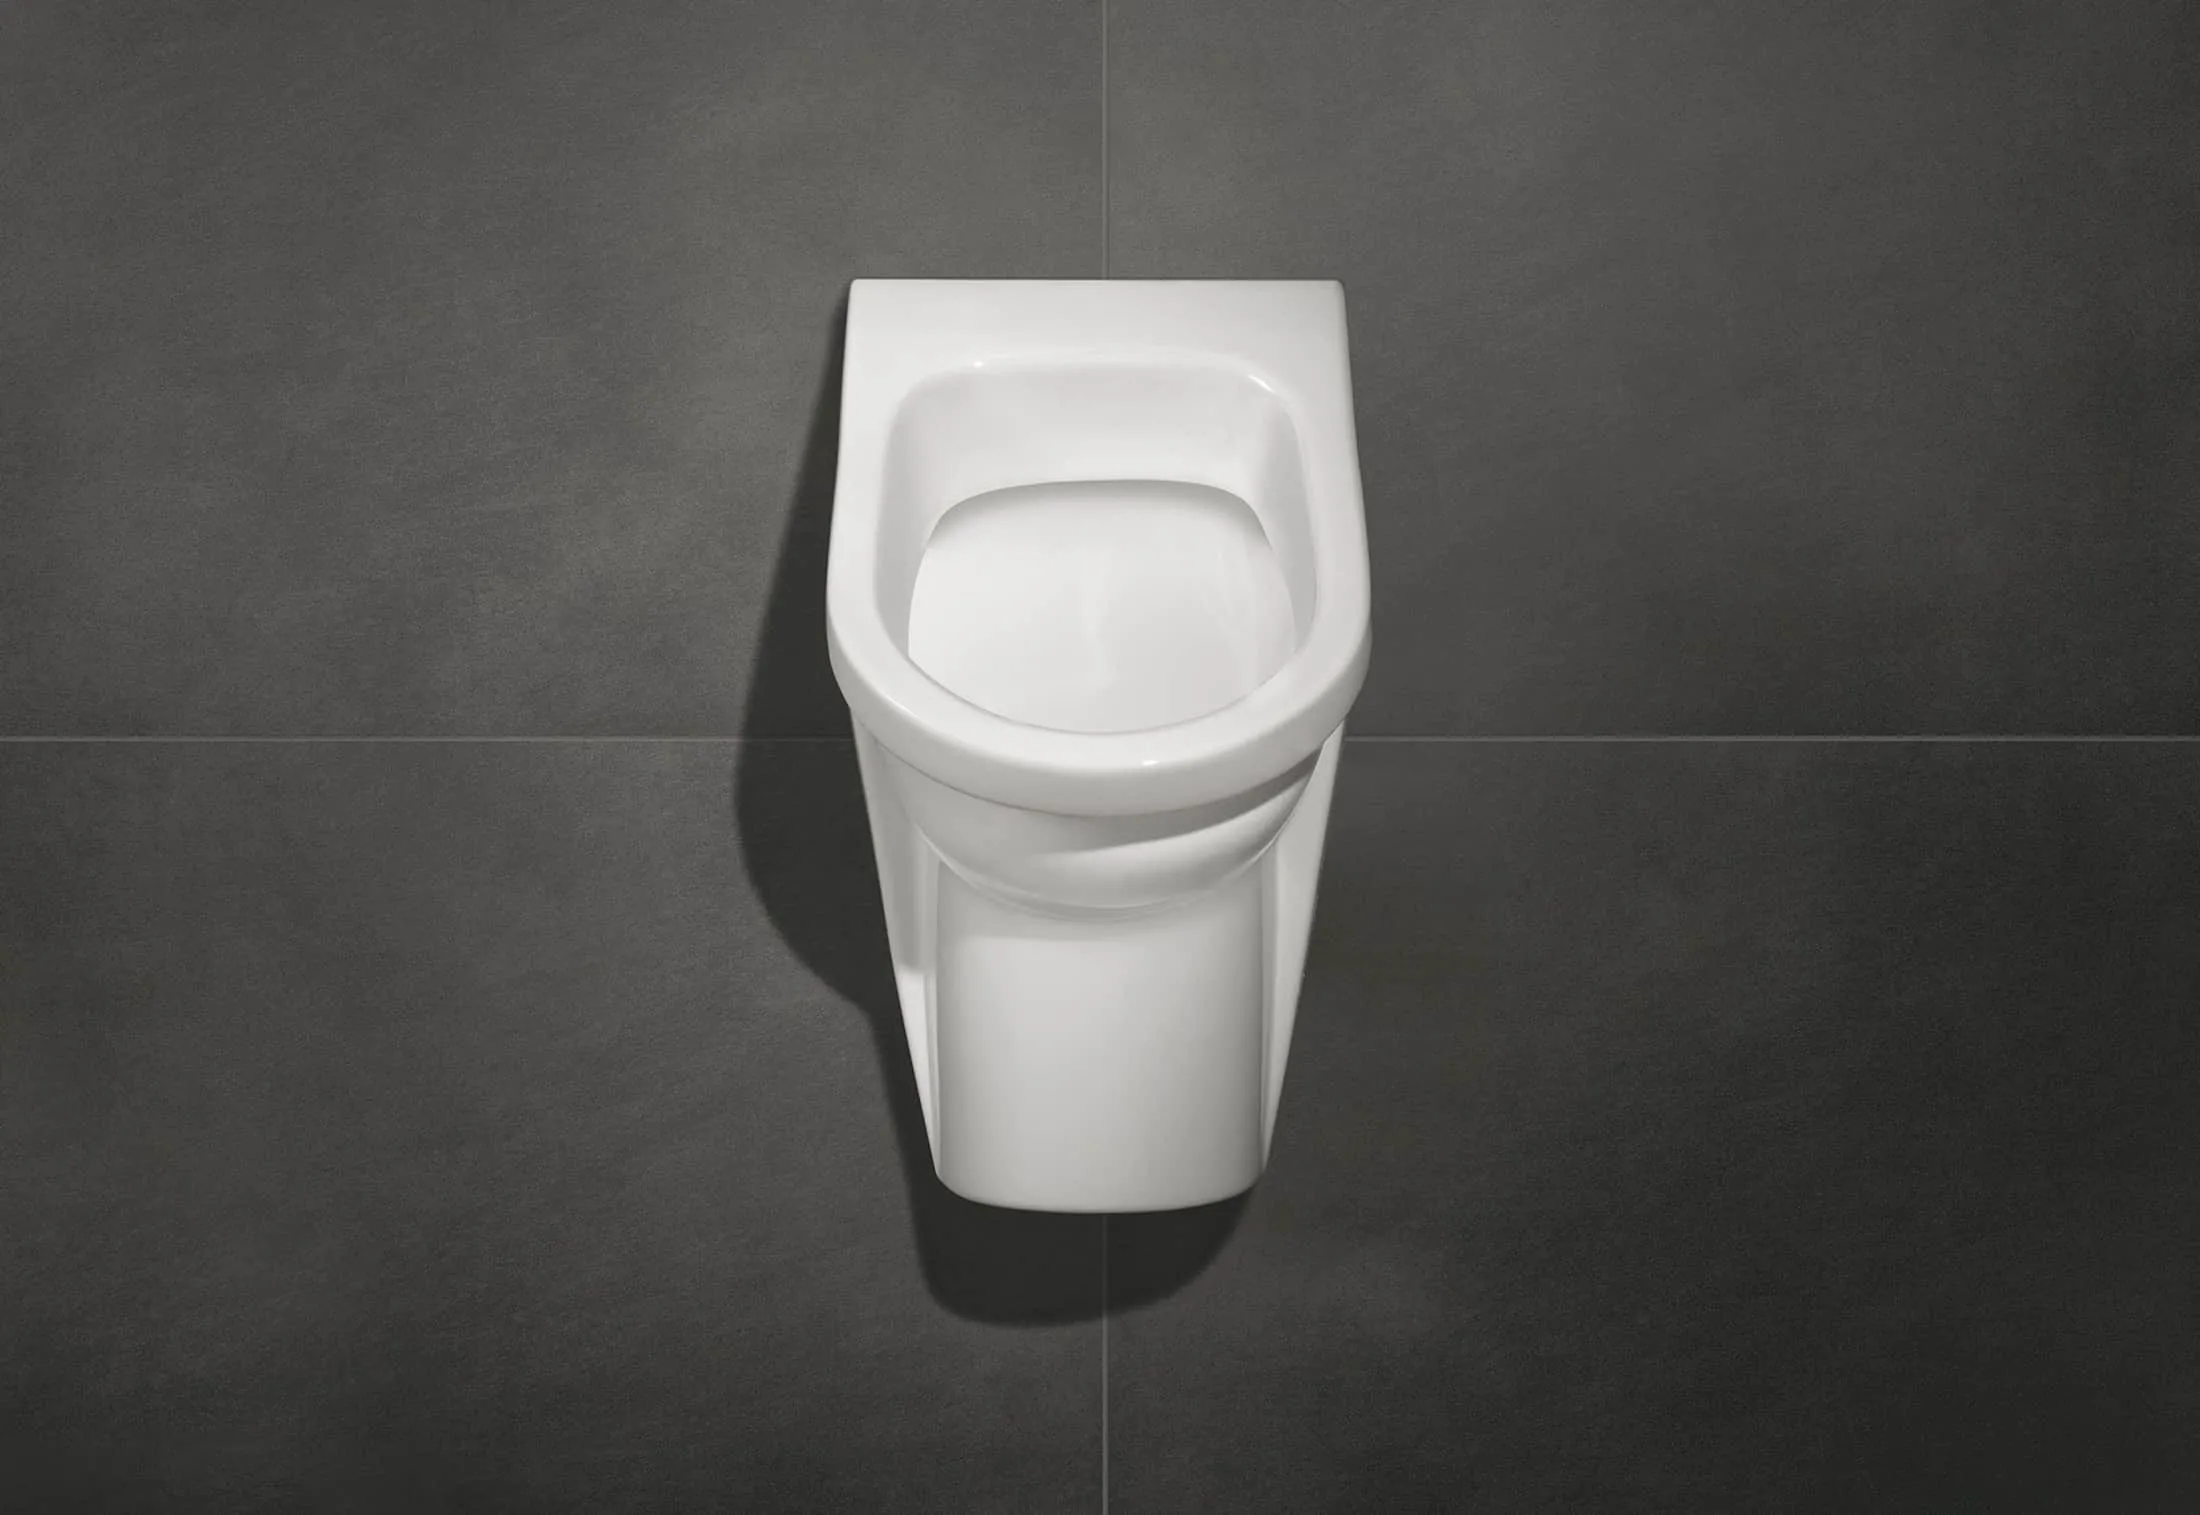 buy sensor, waterless urinals toilet online 